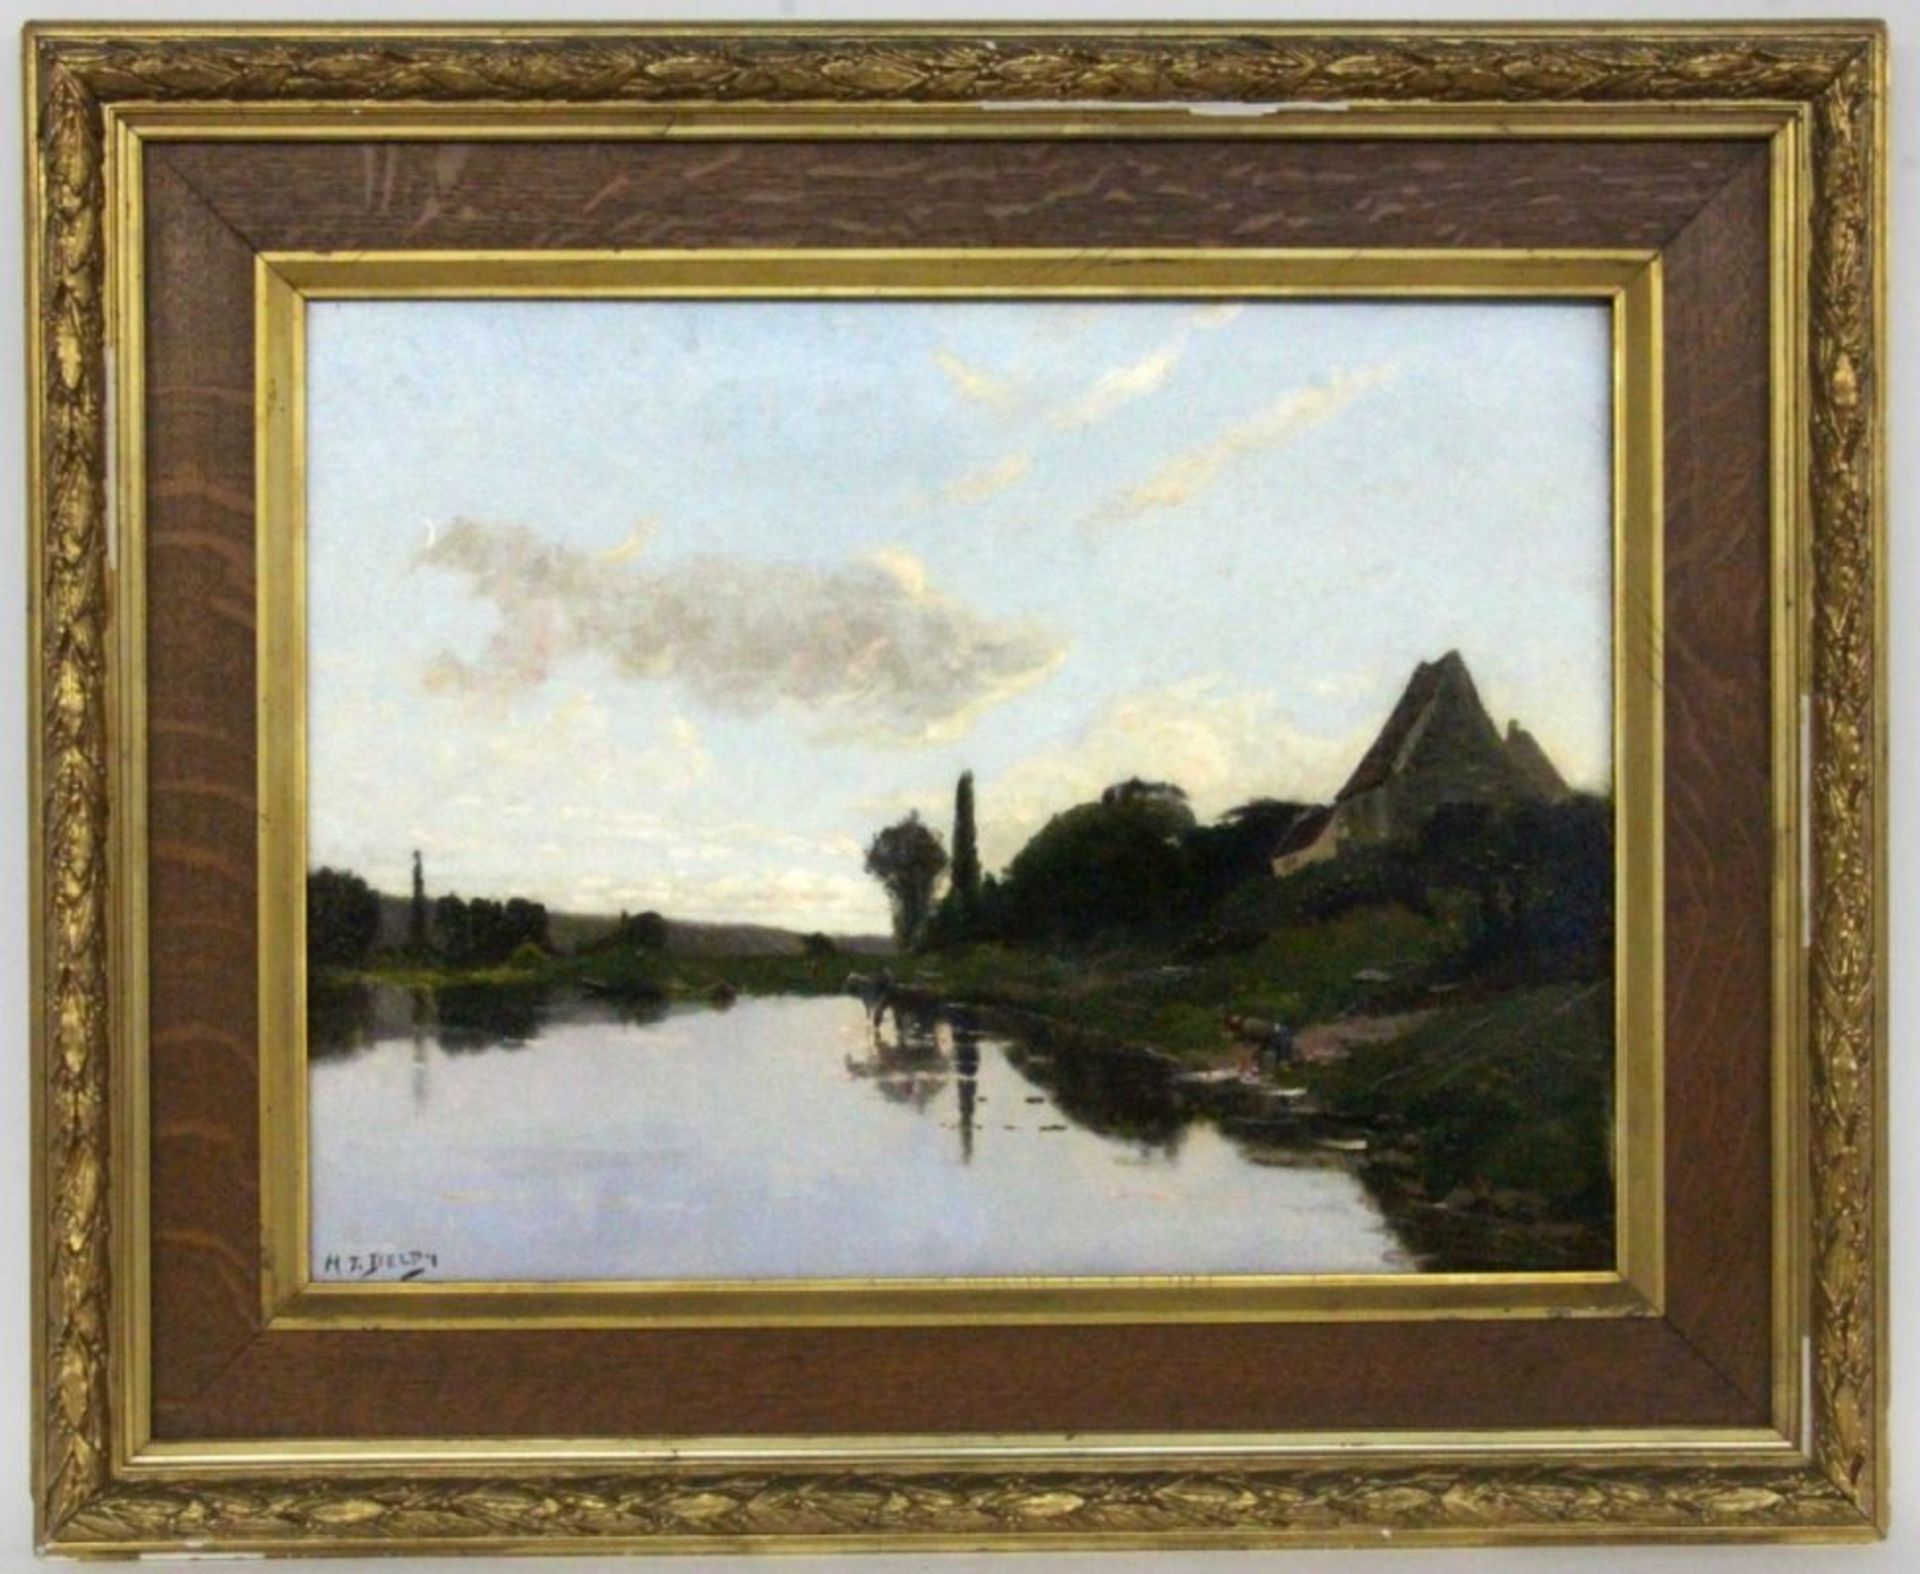 DELPY, HENRI JACQUESBois-le-Roi 1877 - 1957 Paris. Flusslandschaft bei Sonnenuntergang. Öl/Lwd.,